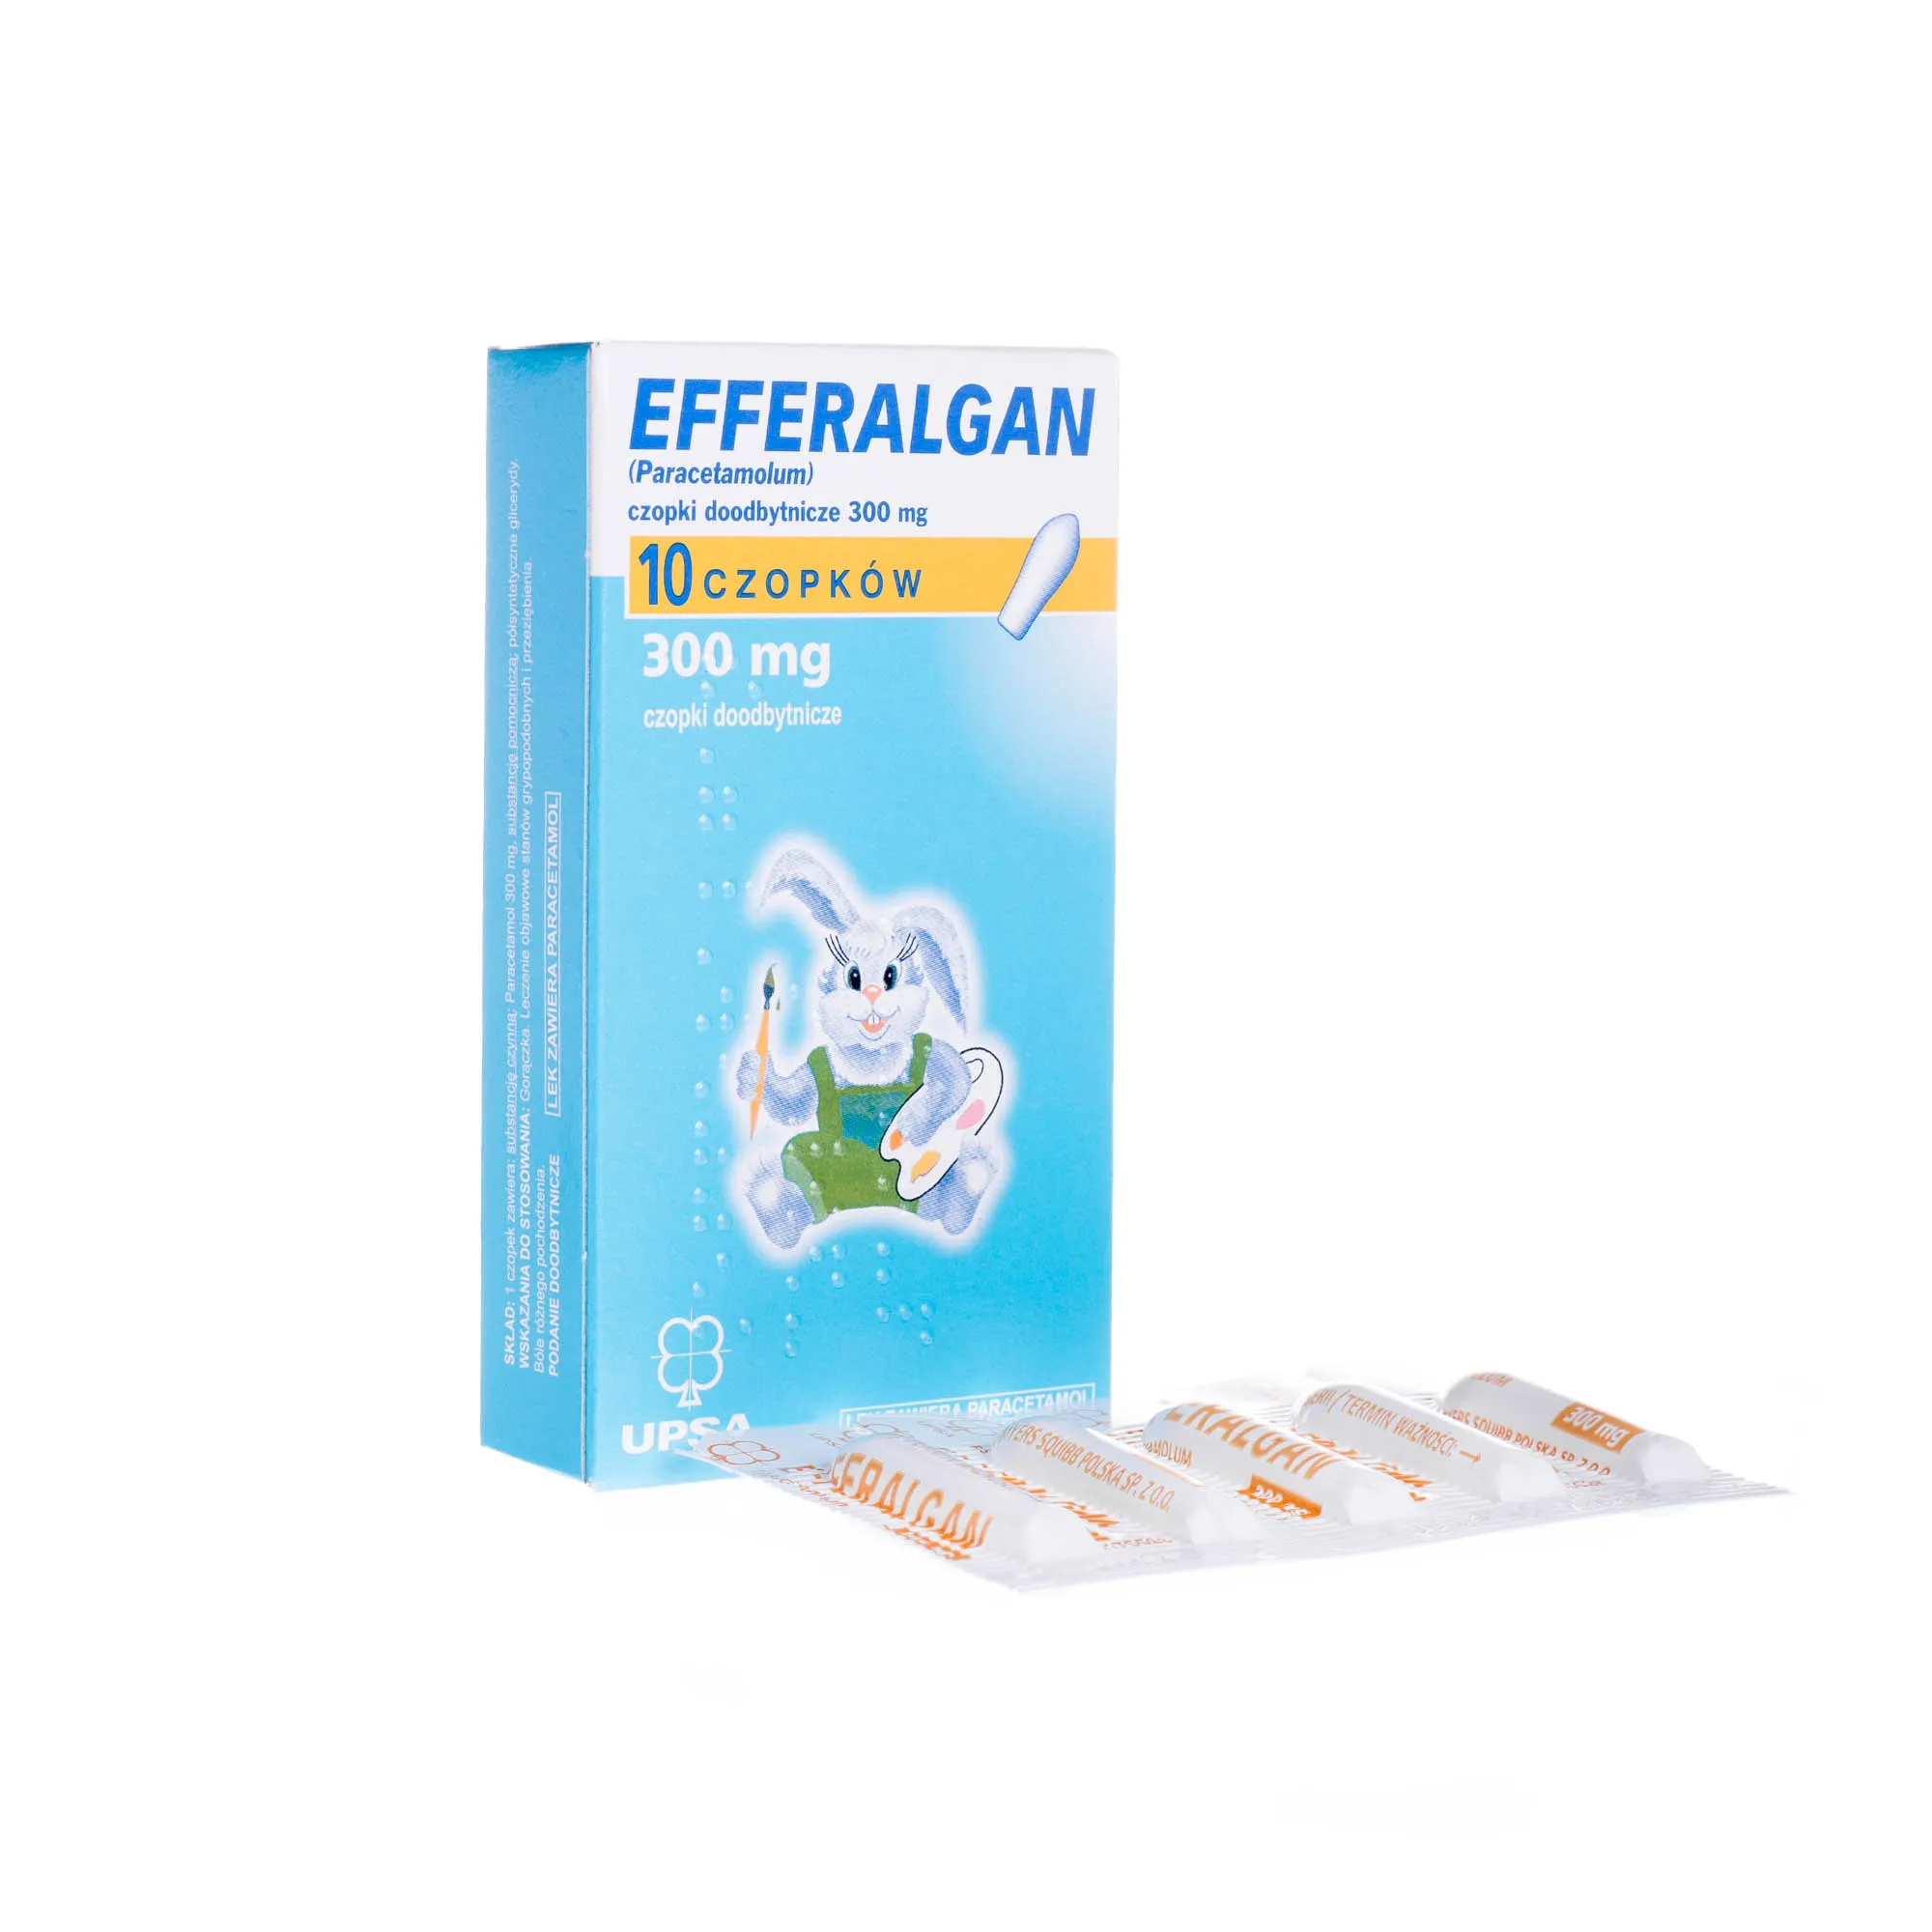 Efferalgan ( Paracetamolum ) - 10 czopków 300 mg, czopki doodbytnicze